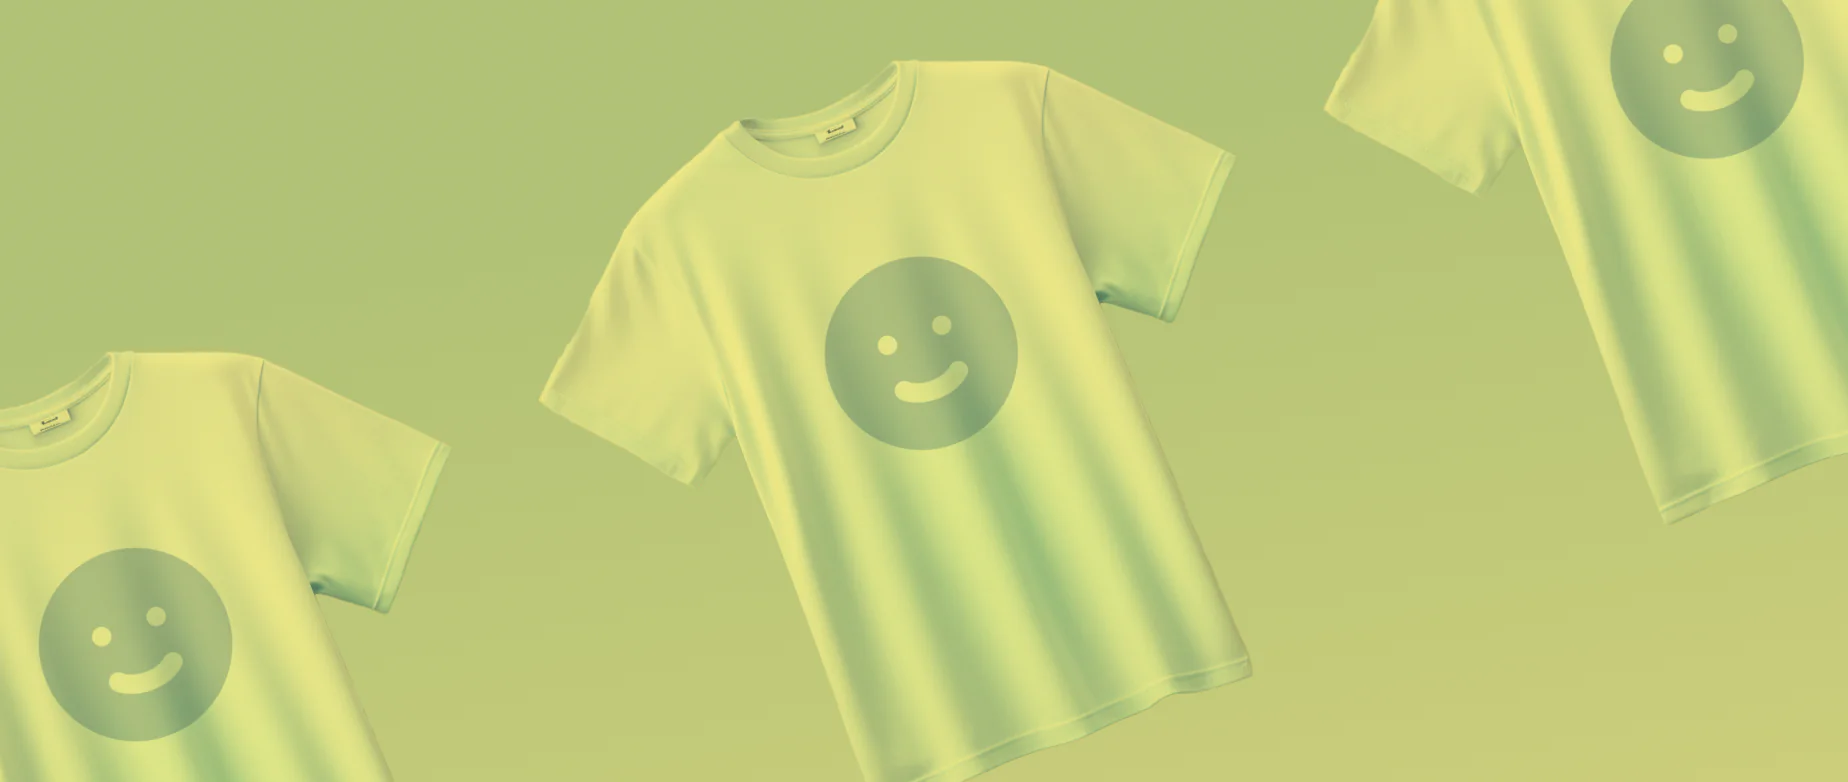 绿色背景上三件印有笑脸图案的T恤